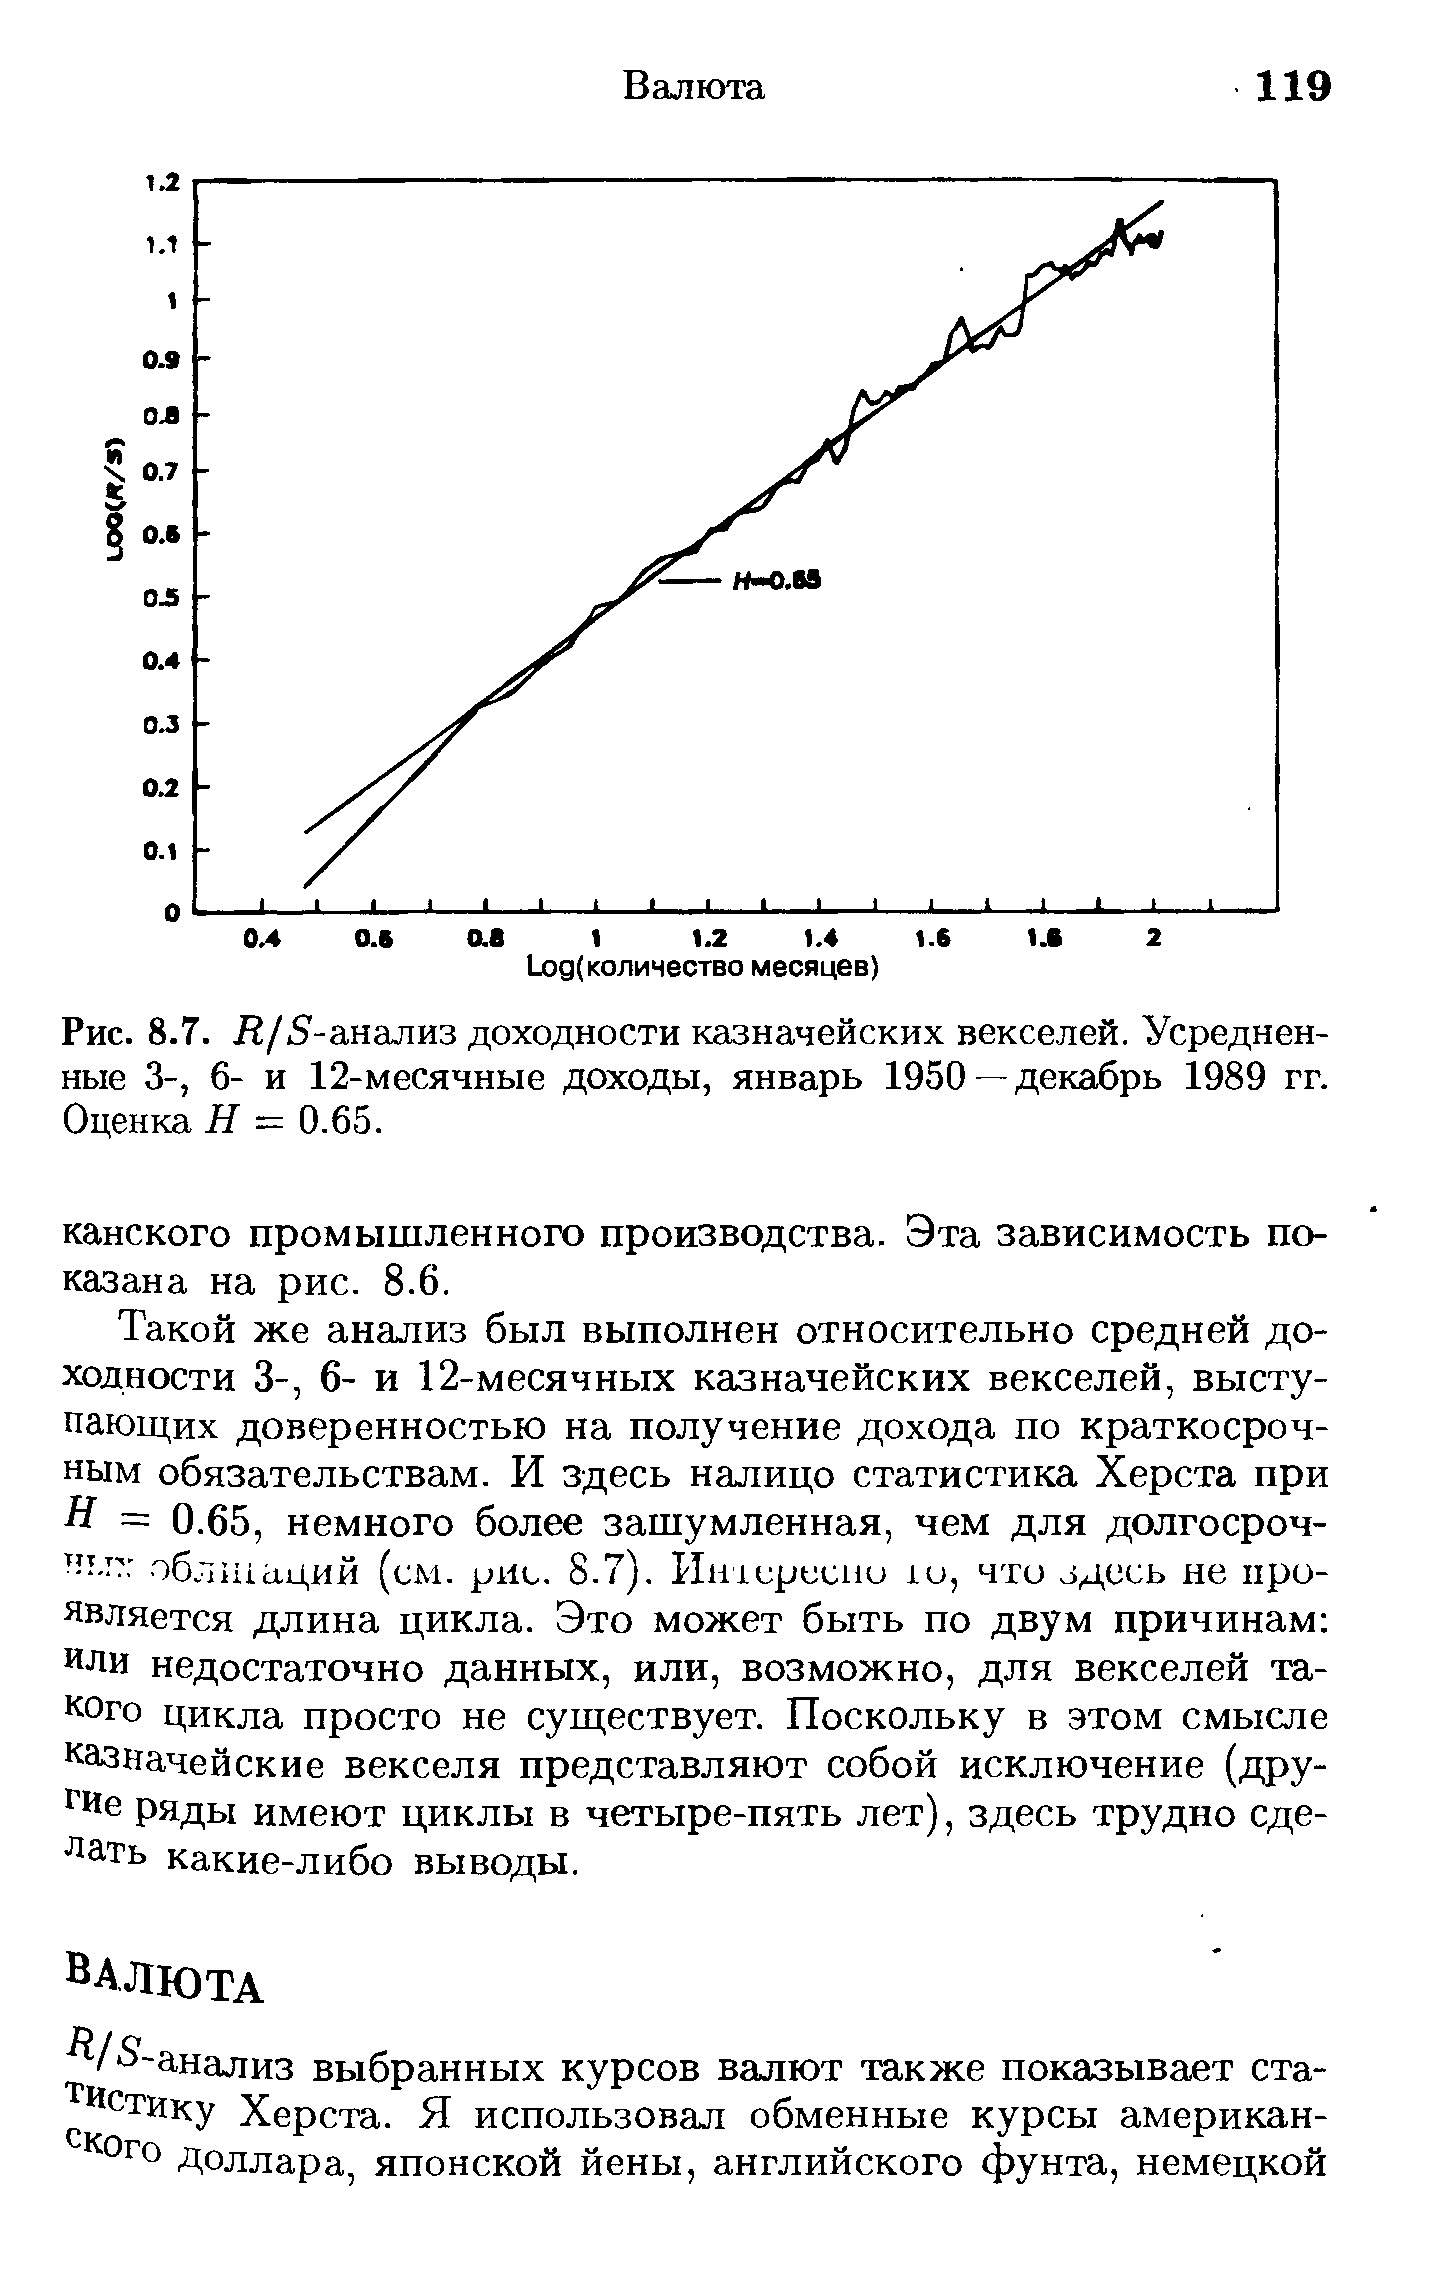 Рис. 8.7. Л/5-анализ доходности казначейских векселей. Усредненные 3-, 6- и 12-месячные доходы, январь 1950—декабрь 1989 гг. Оценка Я - 0.65.
